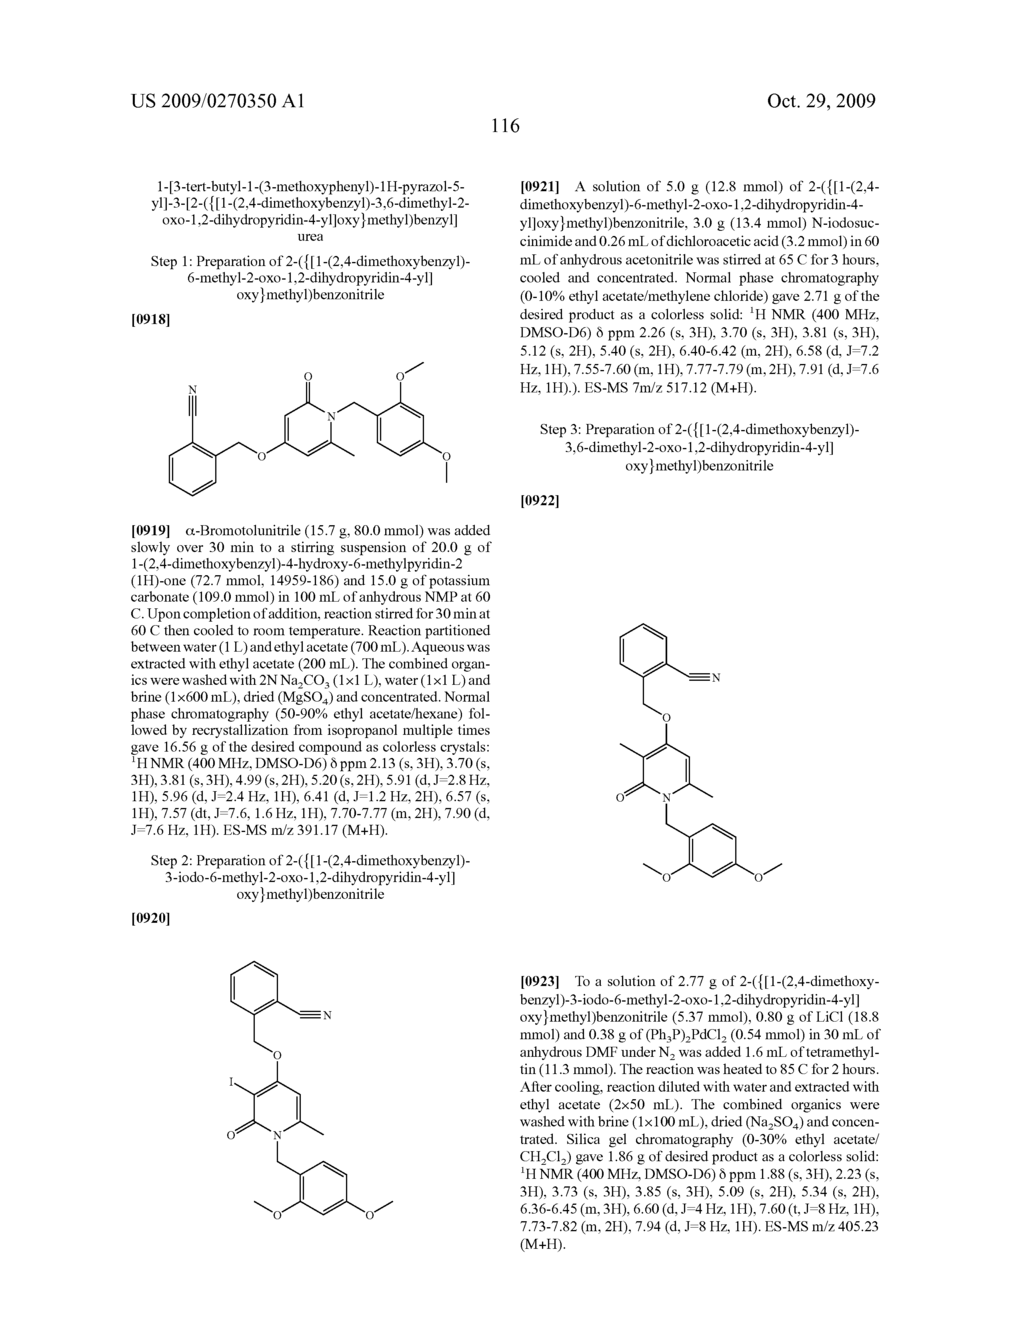 Pyridinone Pyrazole Urea and Pyrimidinone Pyrazole Urea Derivatives - diagram, schematic, and image 117